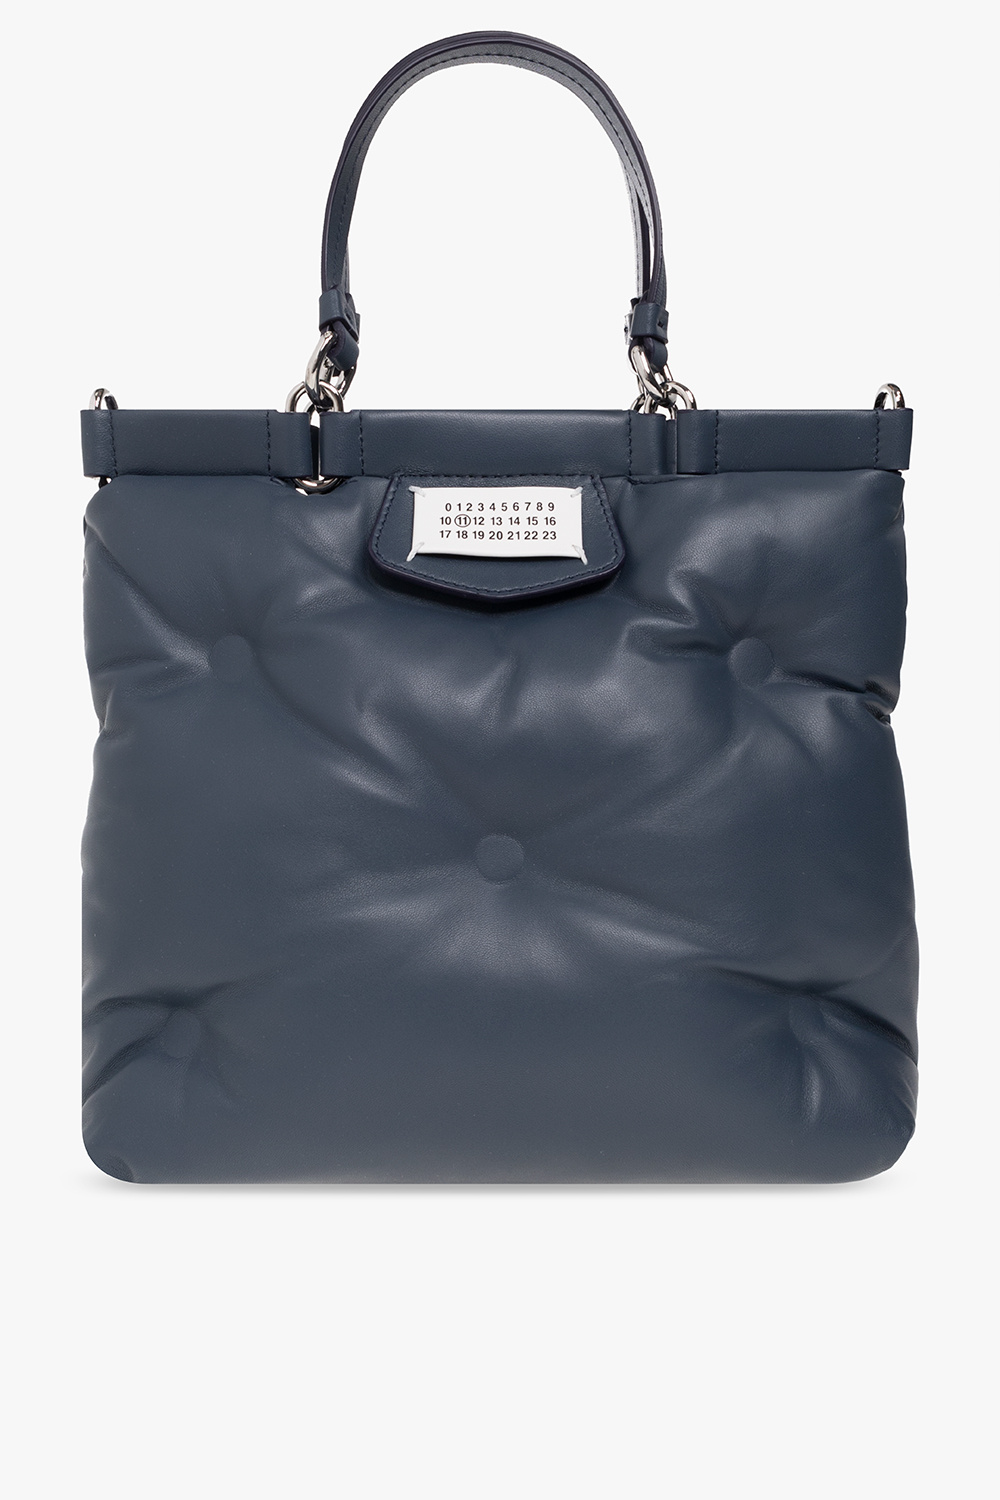 Louis Vuitton Speedy Bandoulière 20 Bag - Vitkac shop online